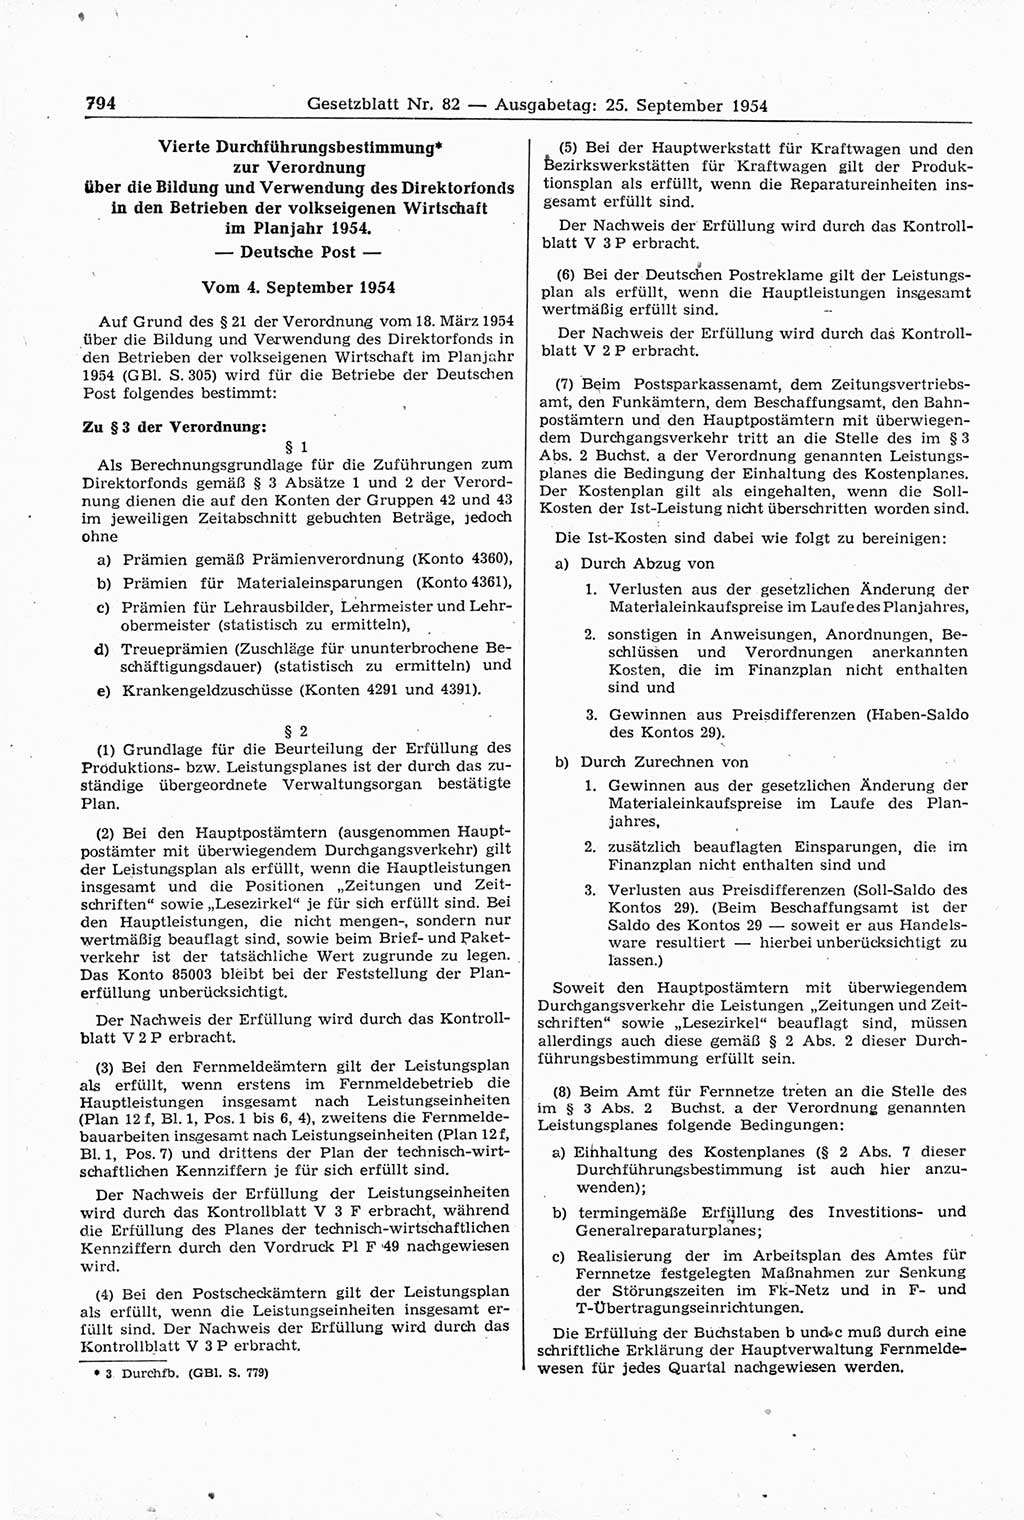 Gesetzblatt (GBl.) der Deutschen Demokratischen Republik (DDR) 1954, Seite 794 (GBl. DDR 1954, S. 794)